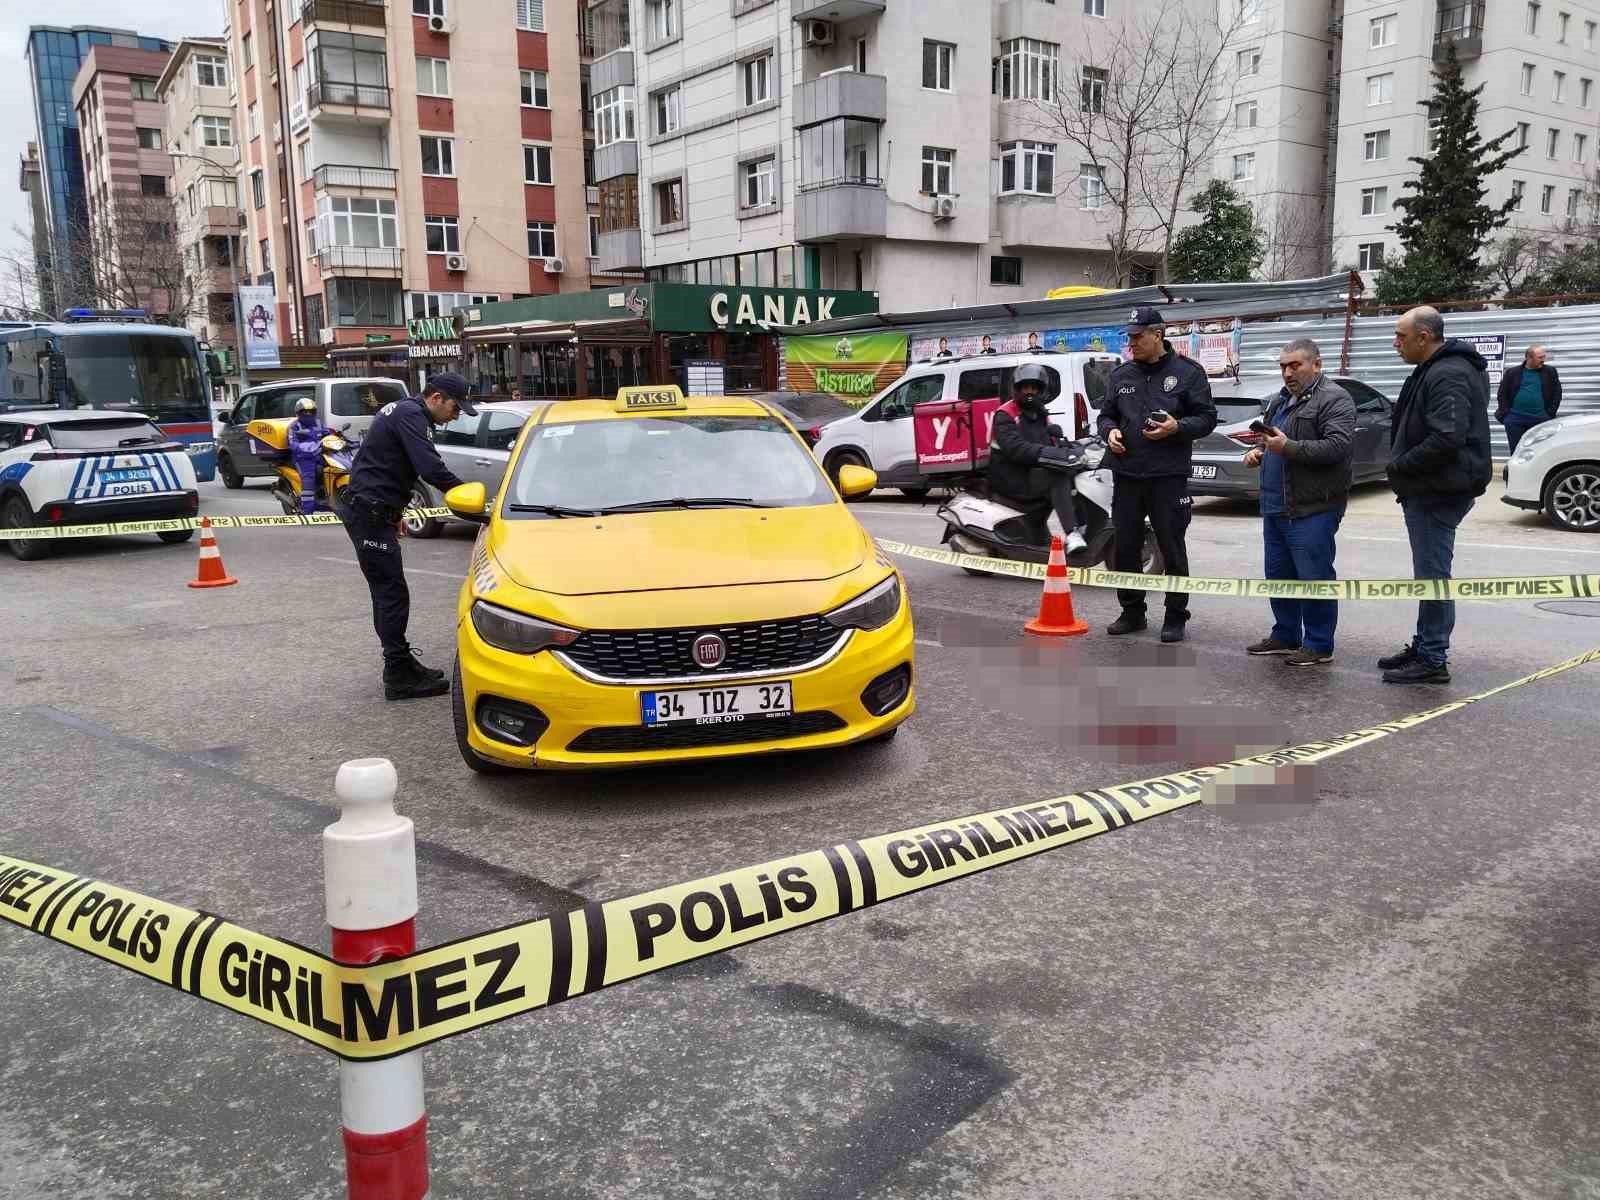 Kadıköy’de taksiciyi gasp edip bıçakladılar
